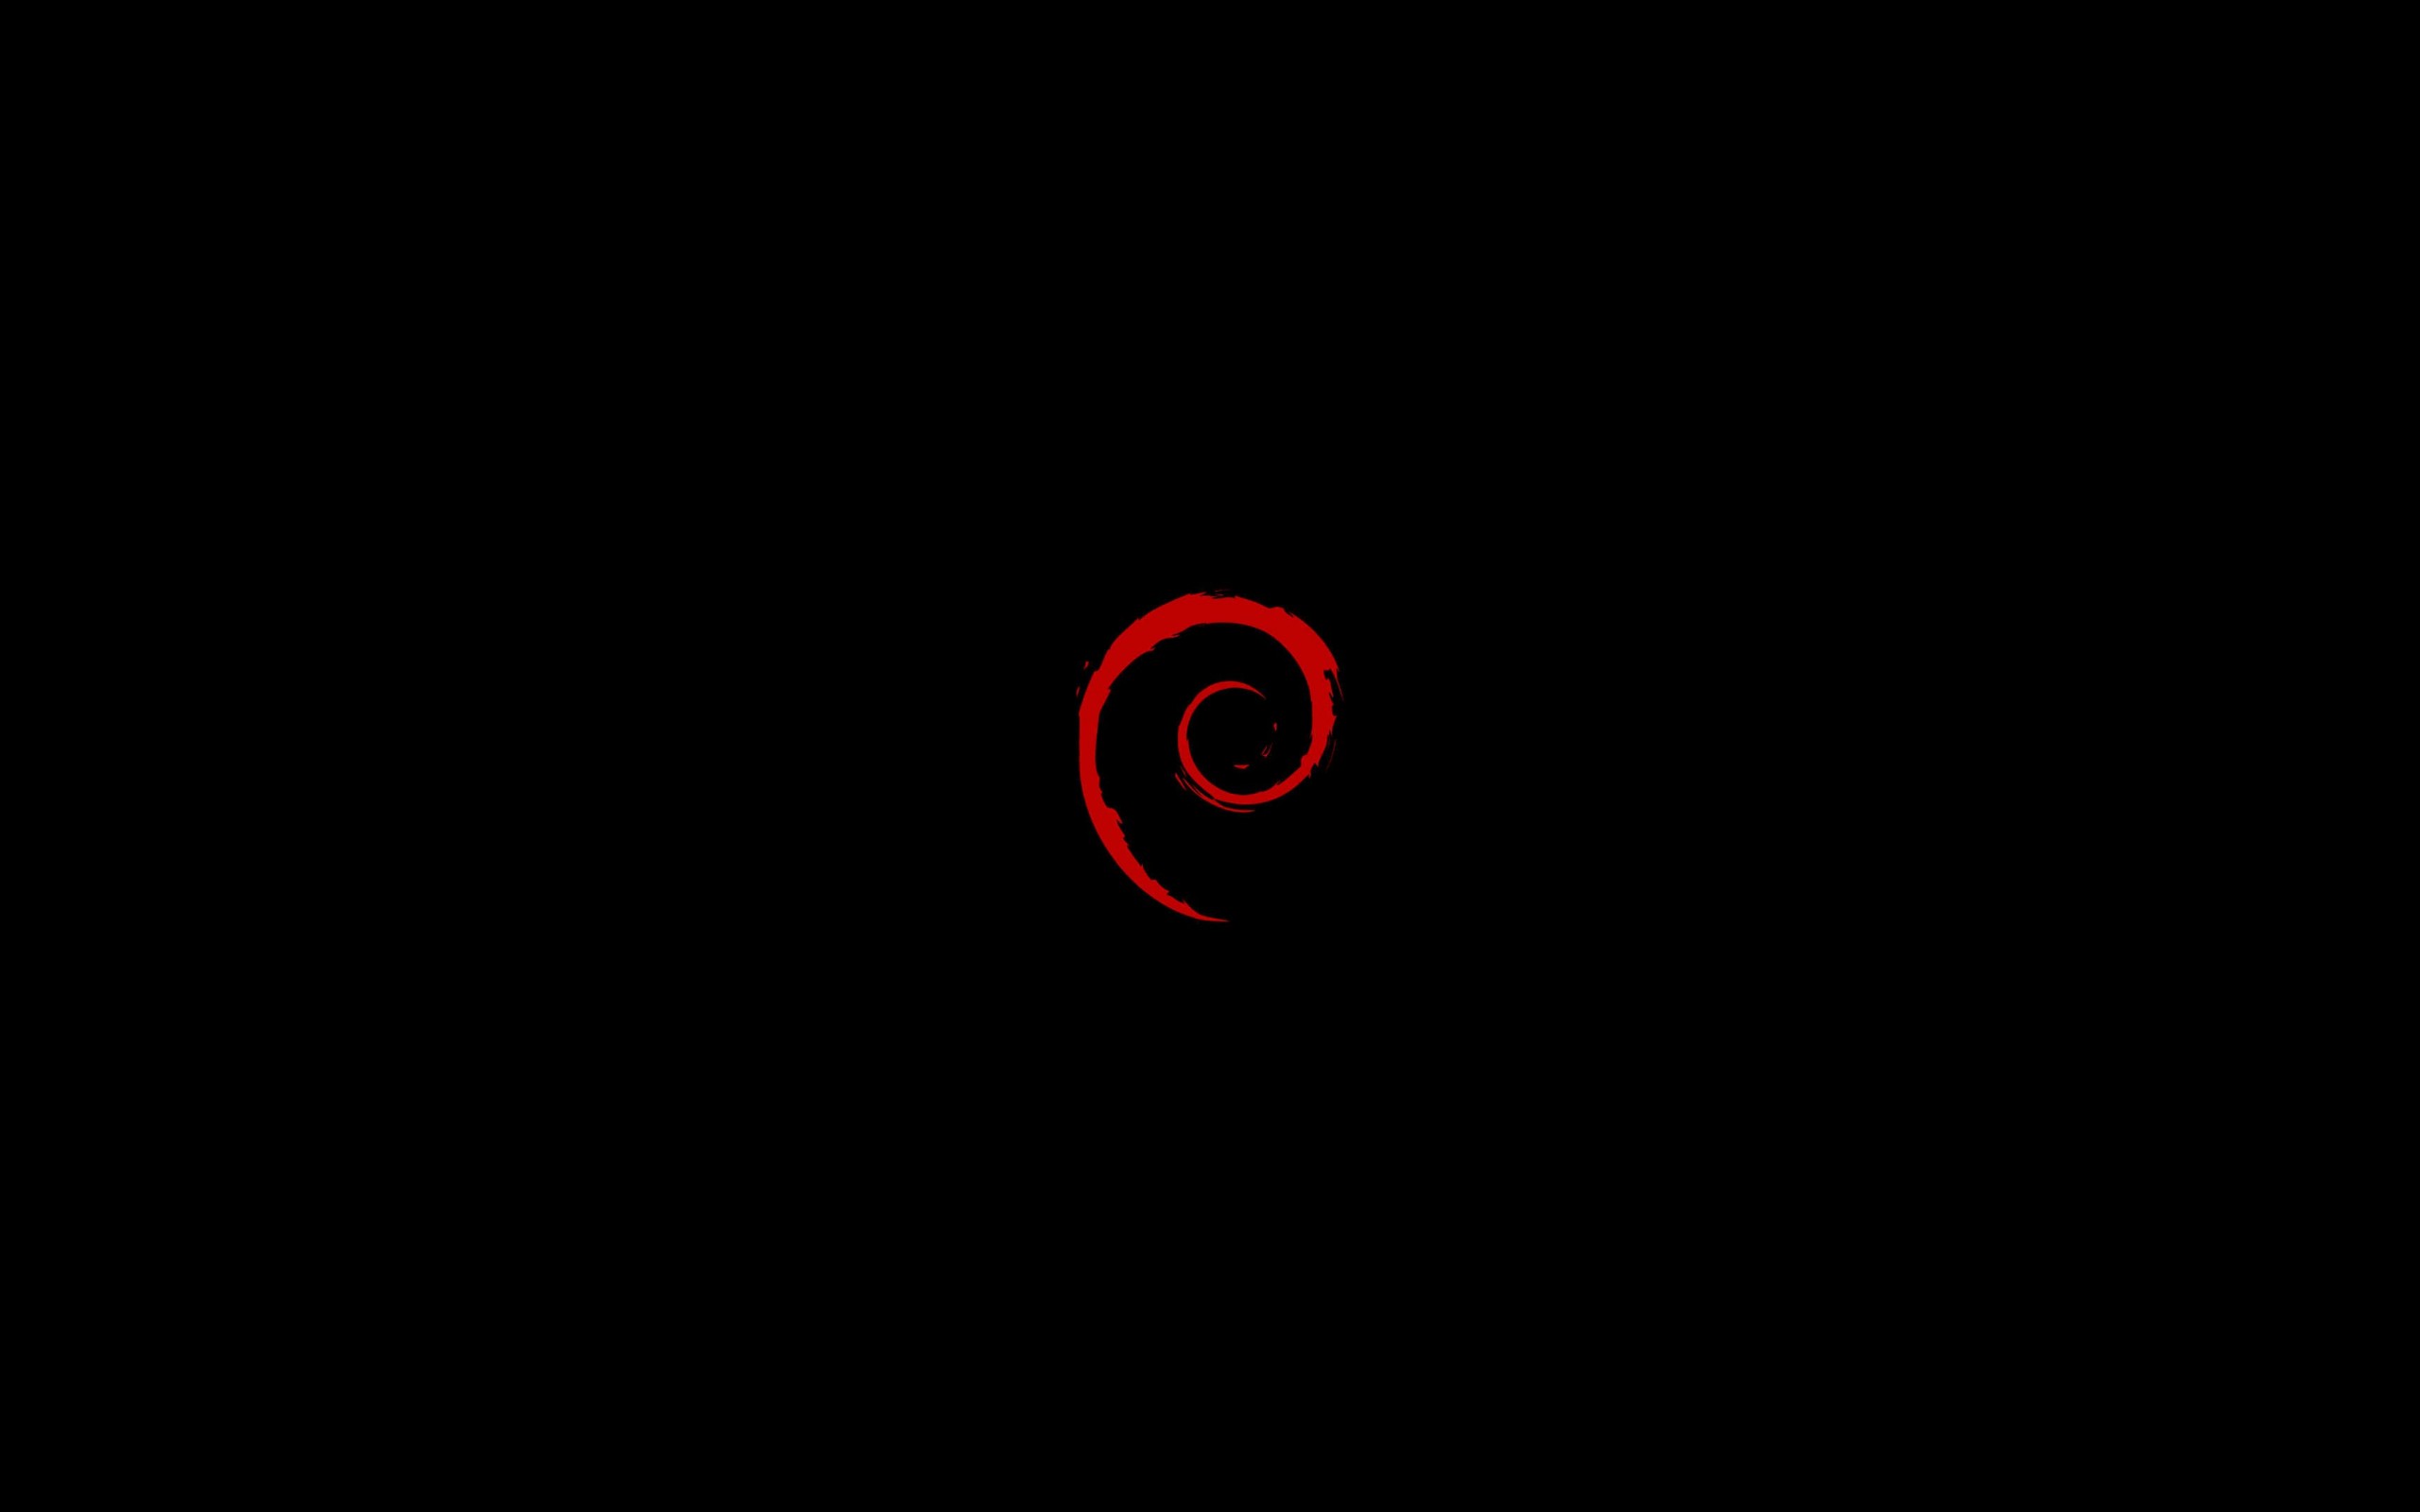 Linux Debian Wallpaper for Desktop 2560x1600